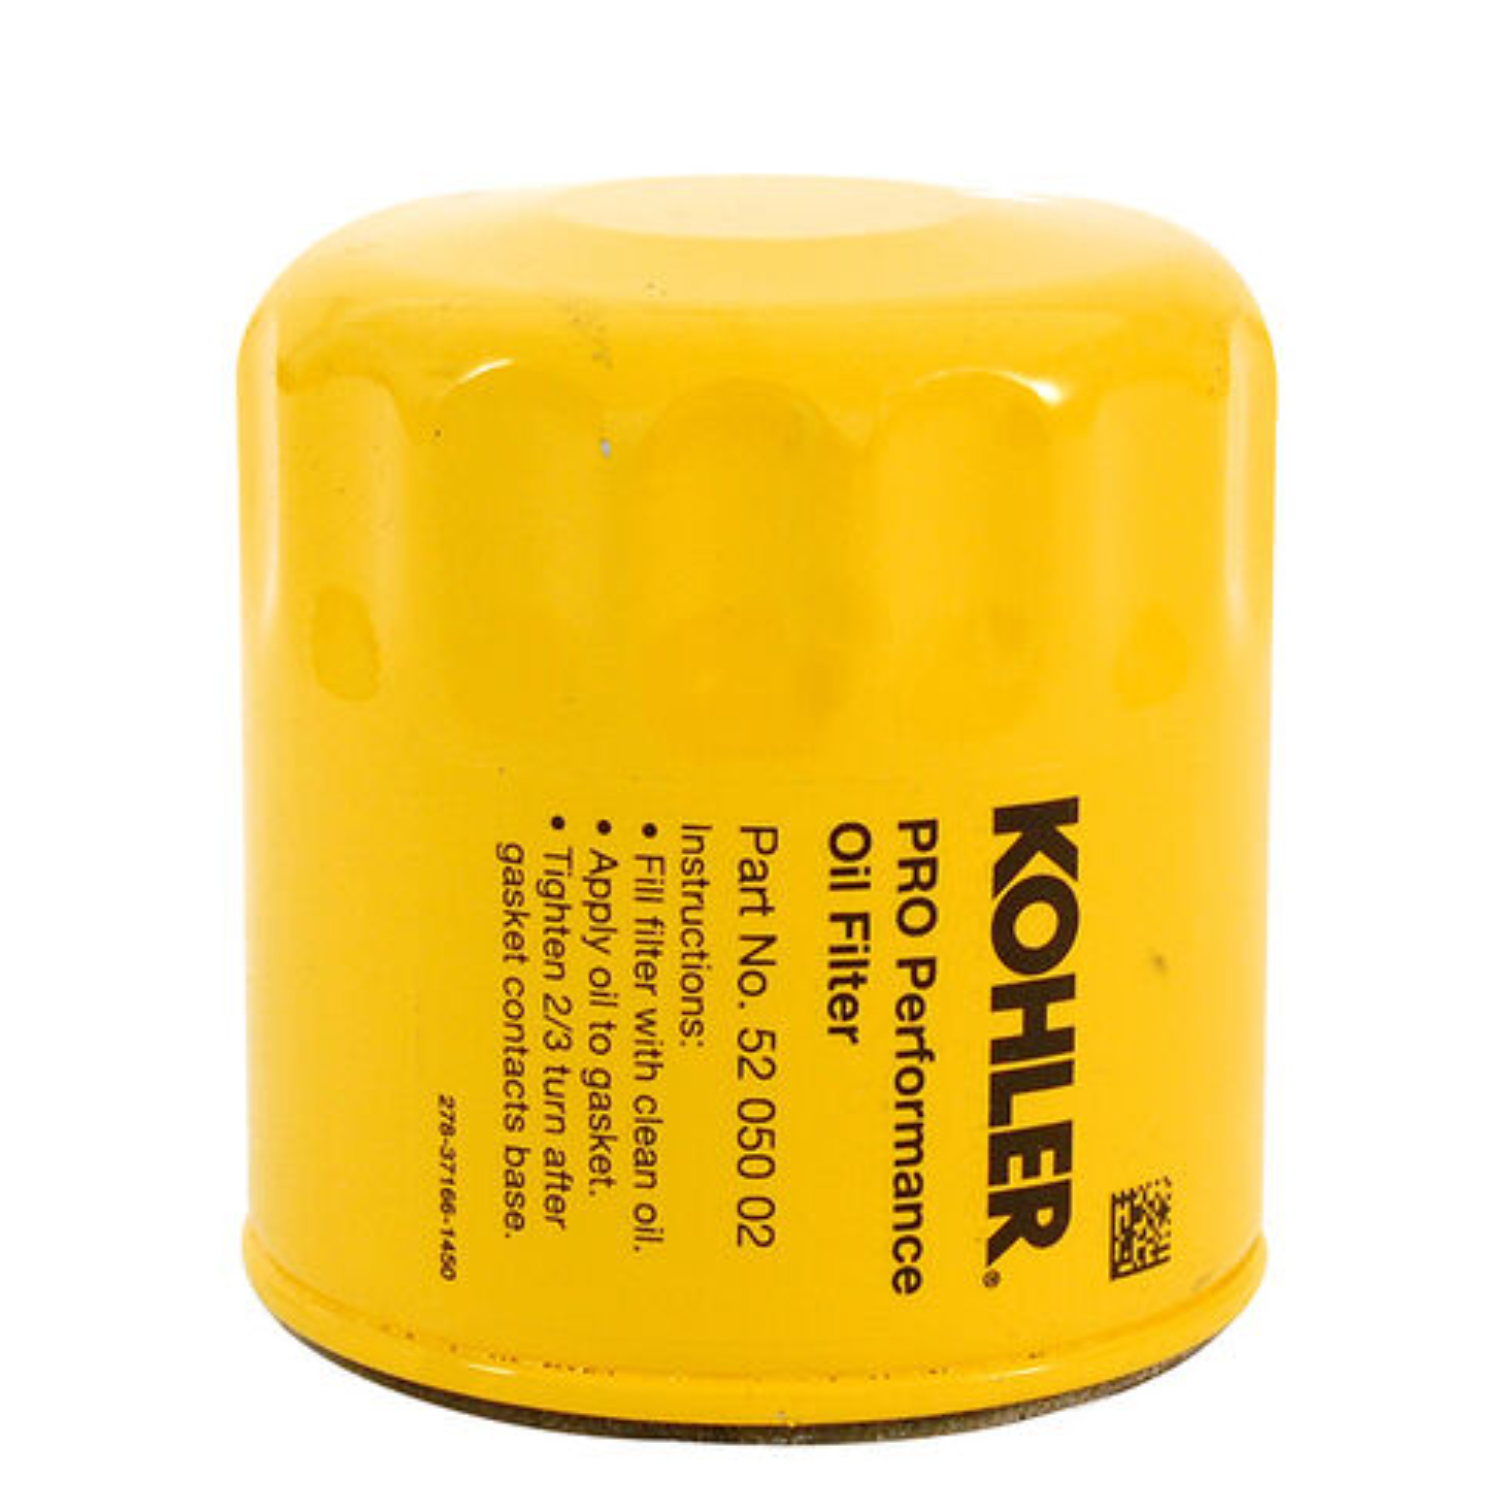 Kohler Oil Filter | 52 050 02-S